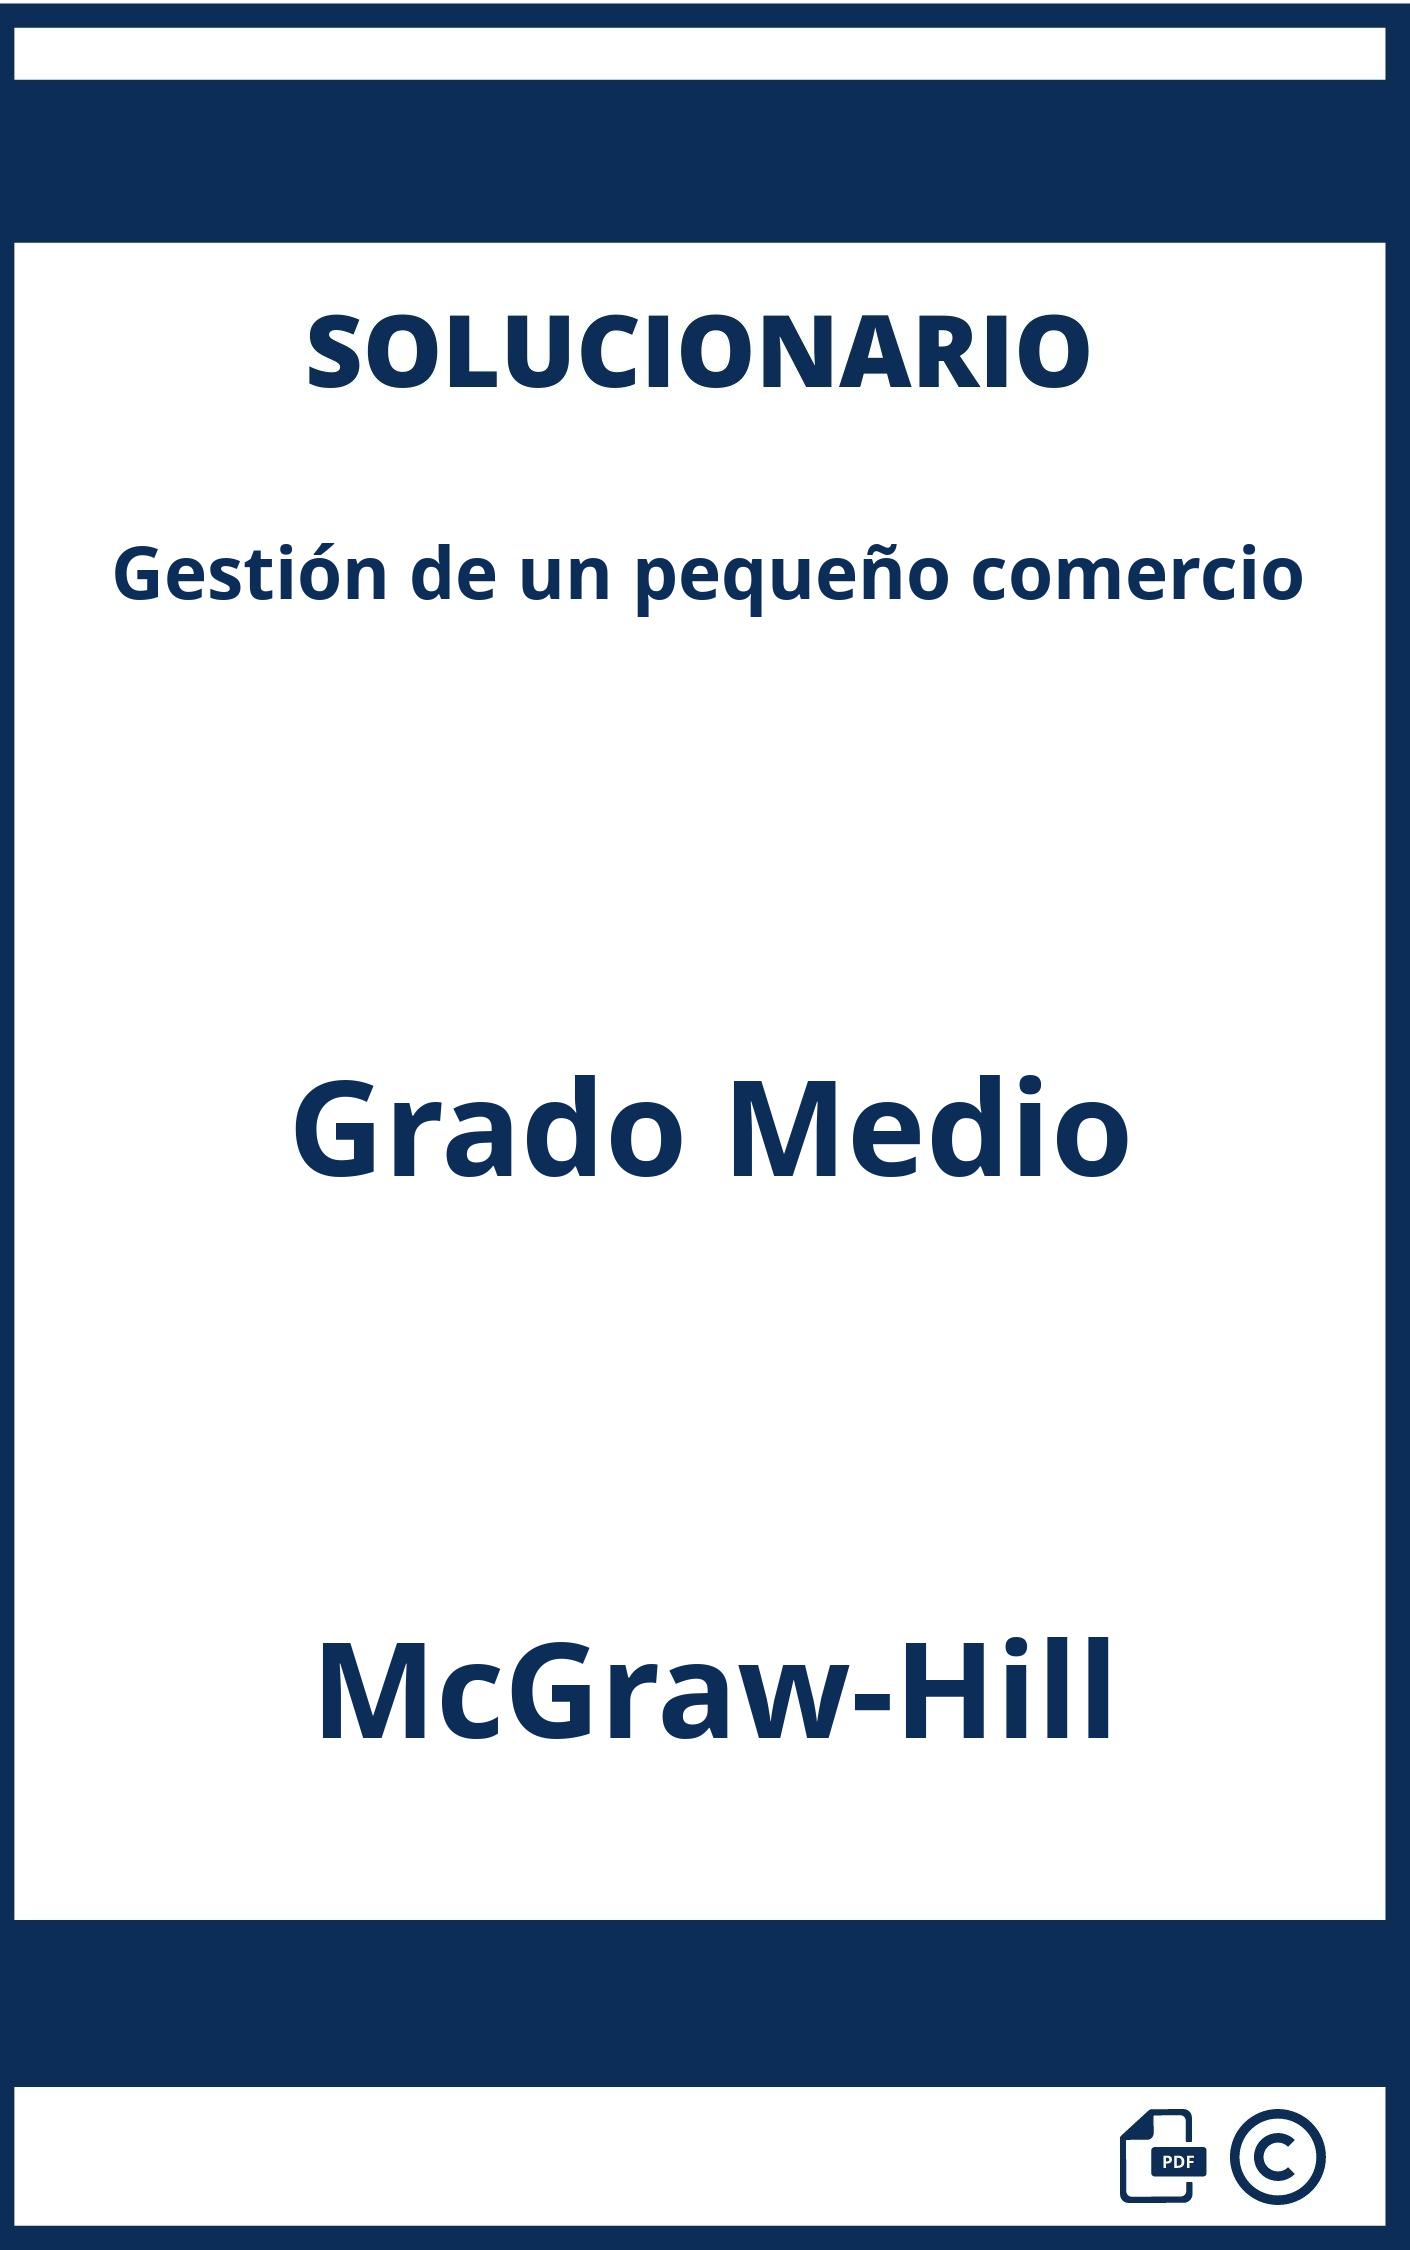 Solucionario Gestión de un pequeño comercio Grado Medio McGraw-Hill